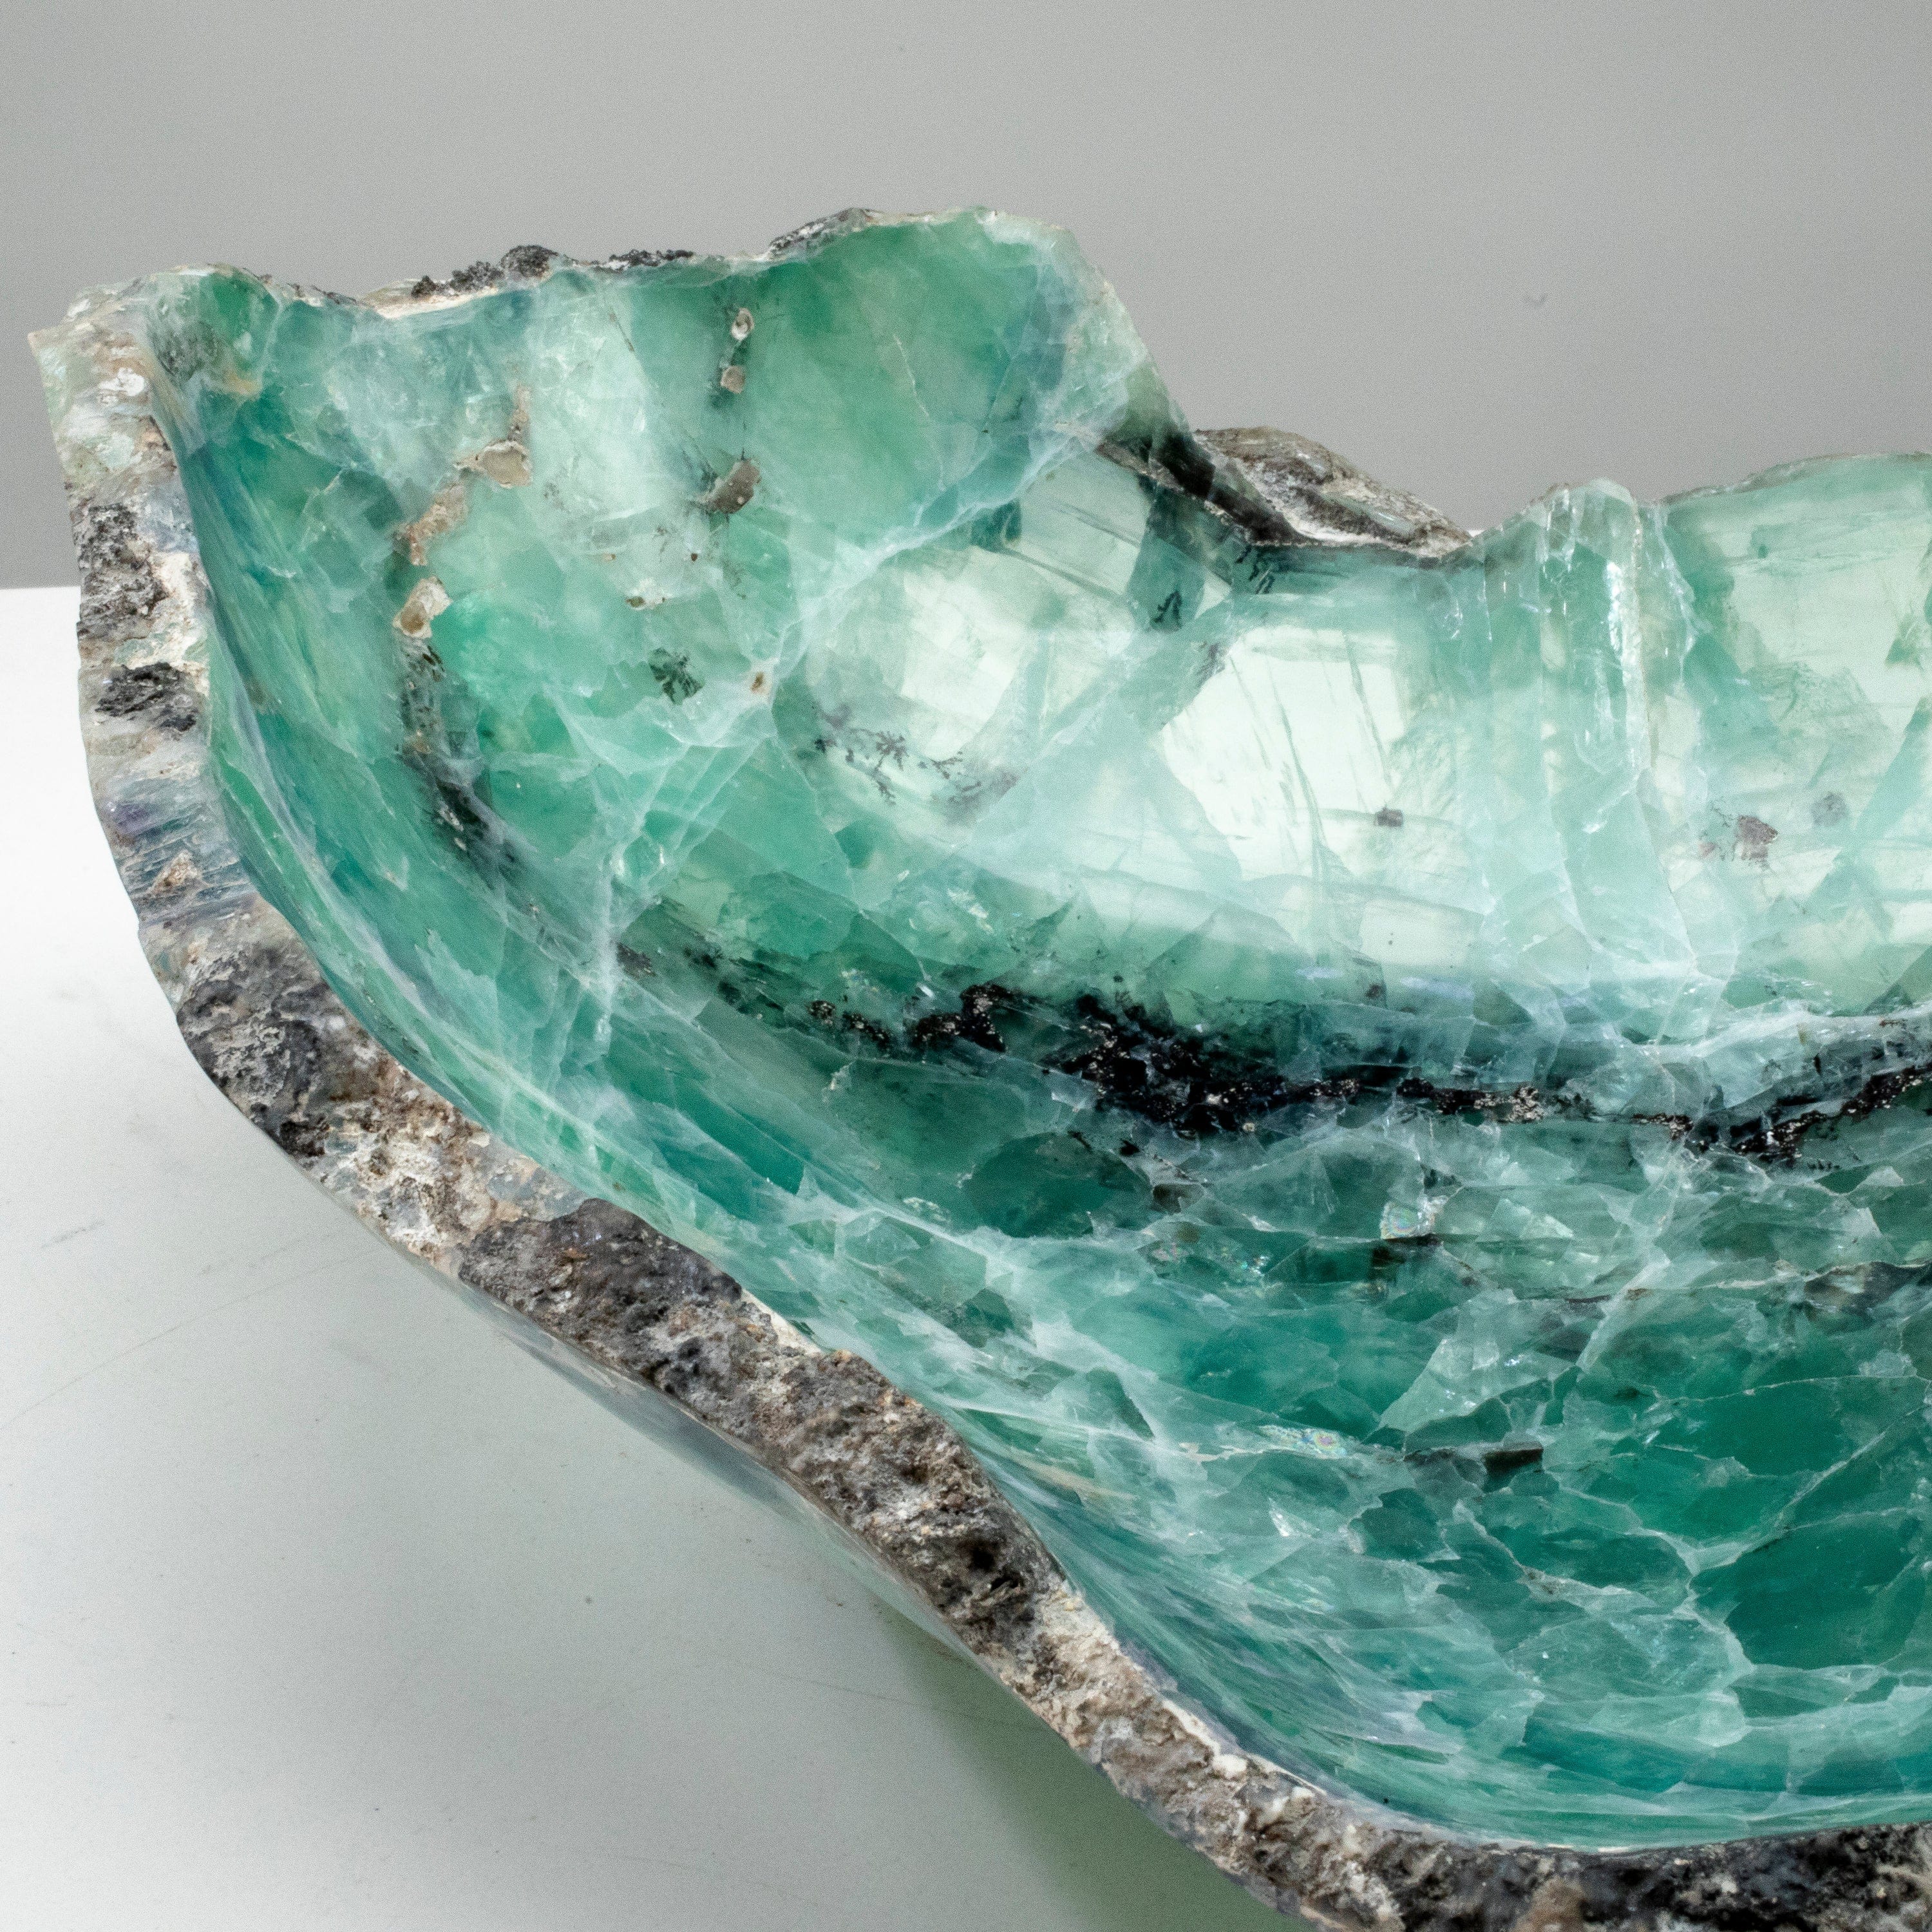 KALIFANO Gemstone Bowls Natural Blue / Green Fluorite Bowl 12" BFL7800.002